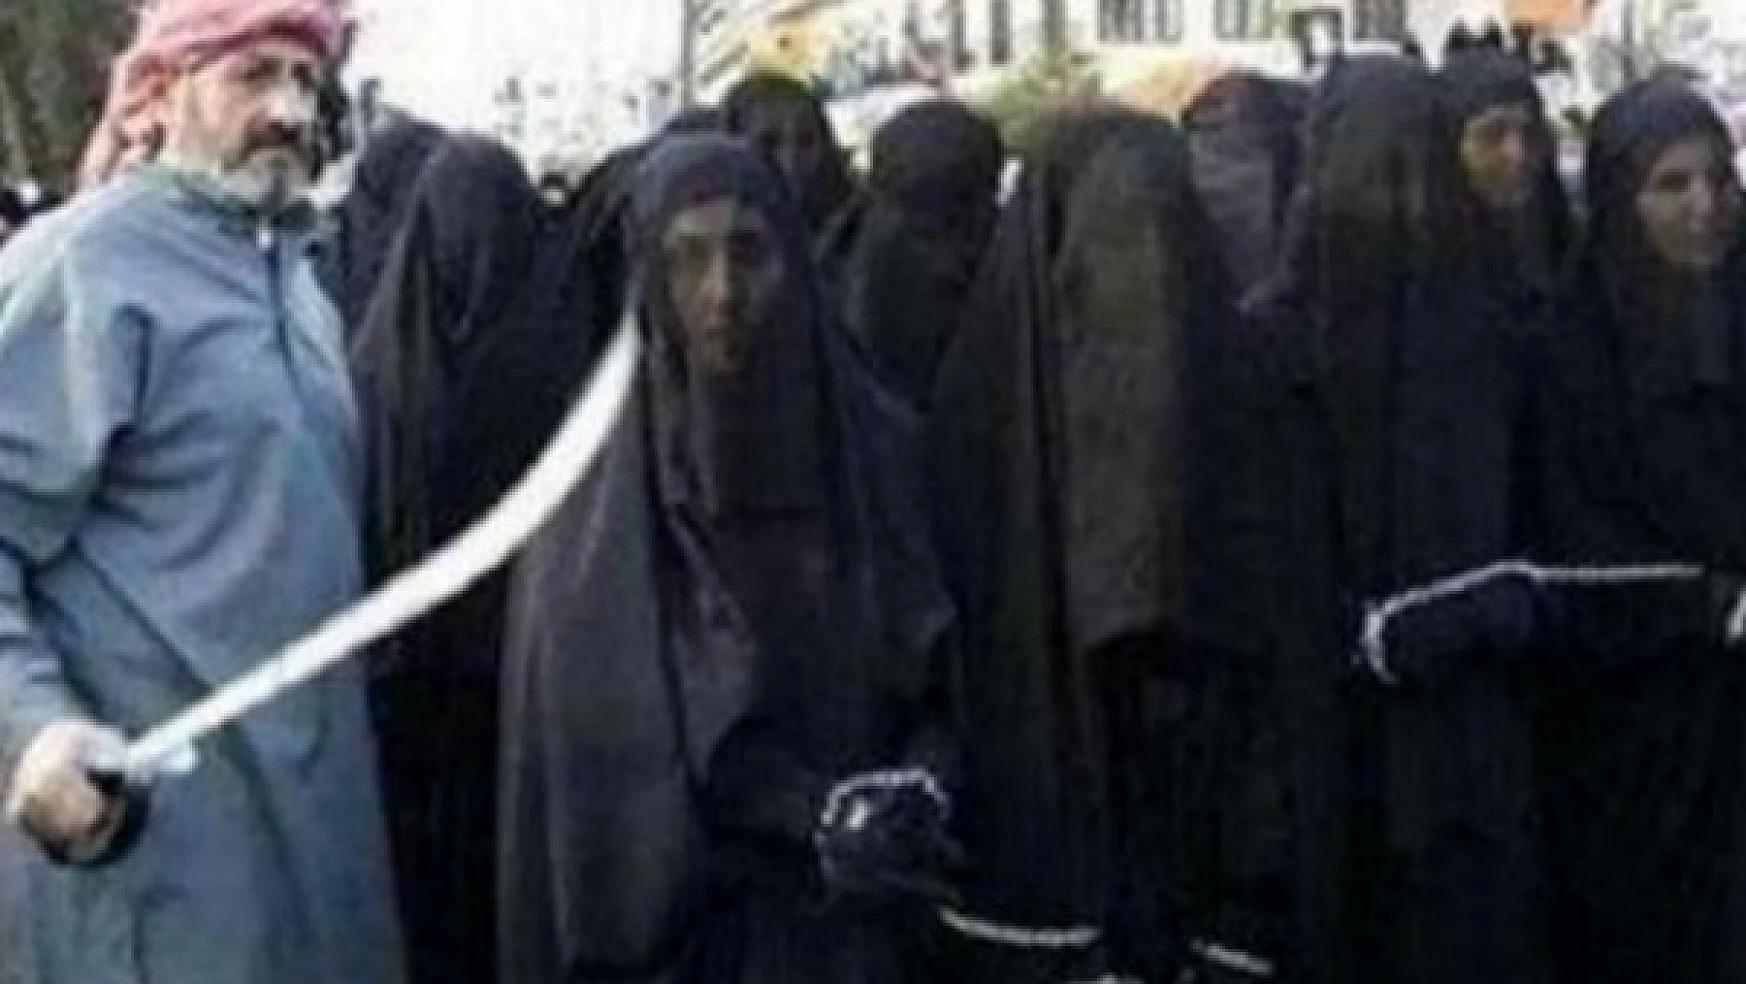 IŞİD, 42 Ezidi kadını satmış